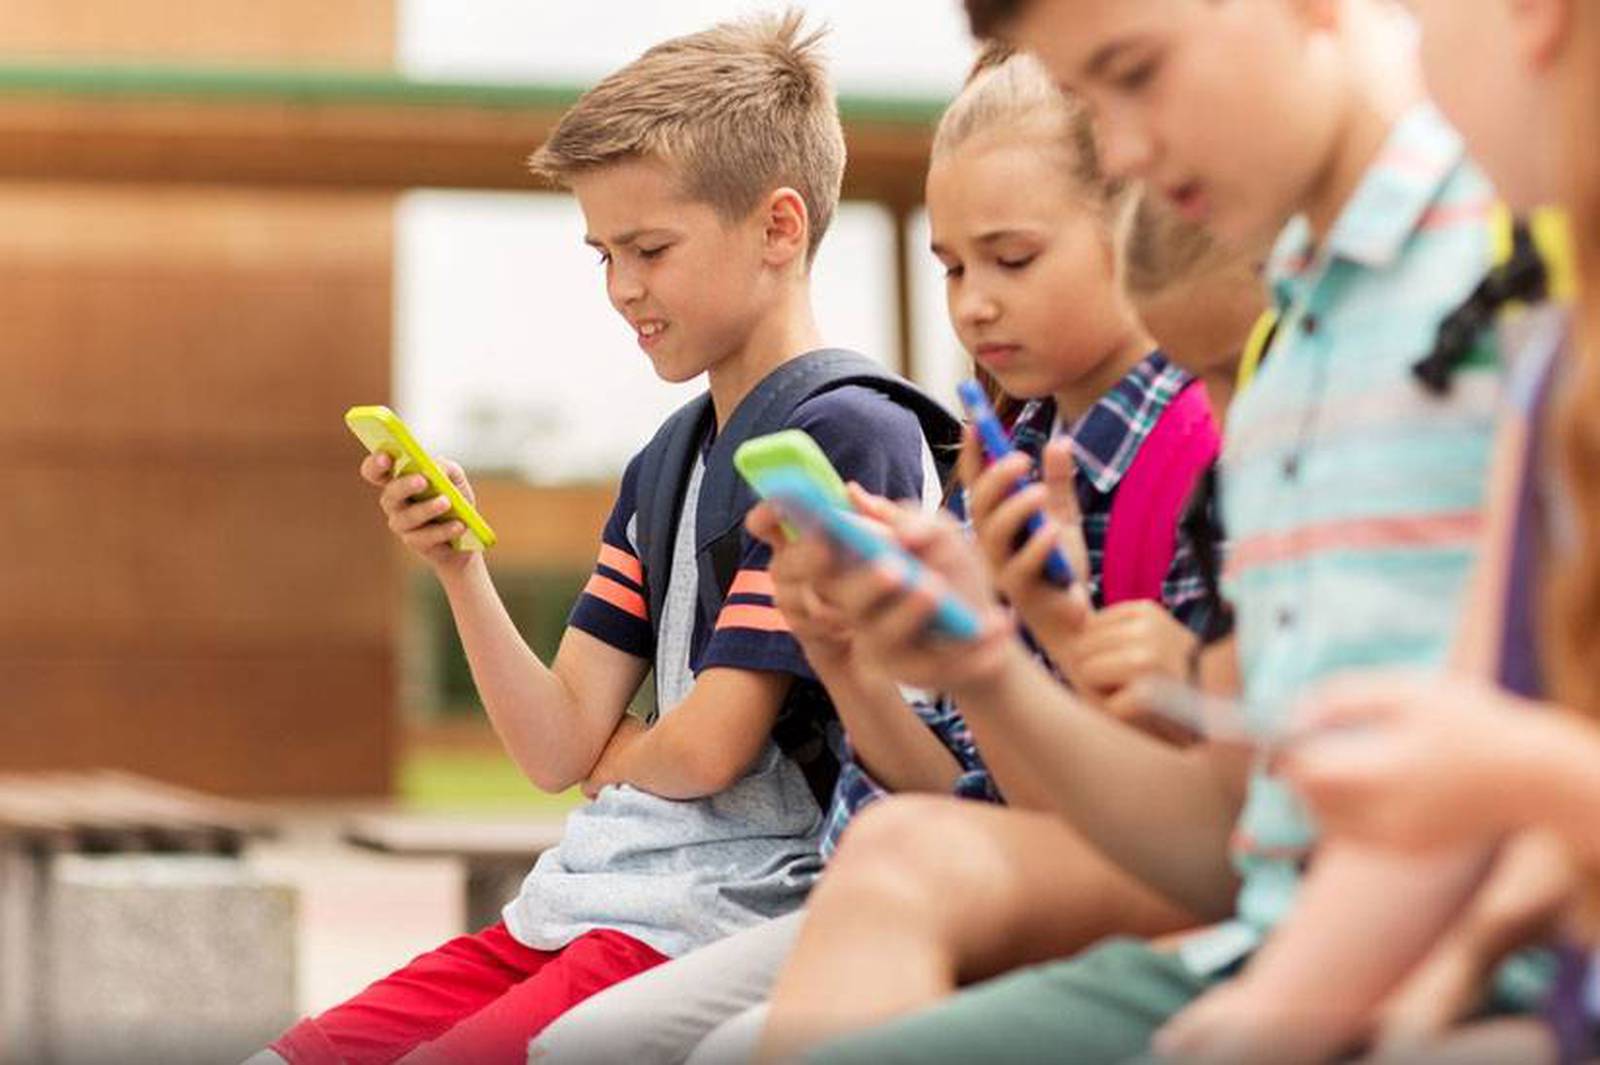 Francia prohíbe el uso de celulares en escuelas primarias y secundarias